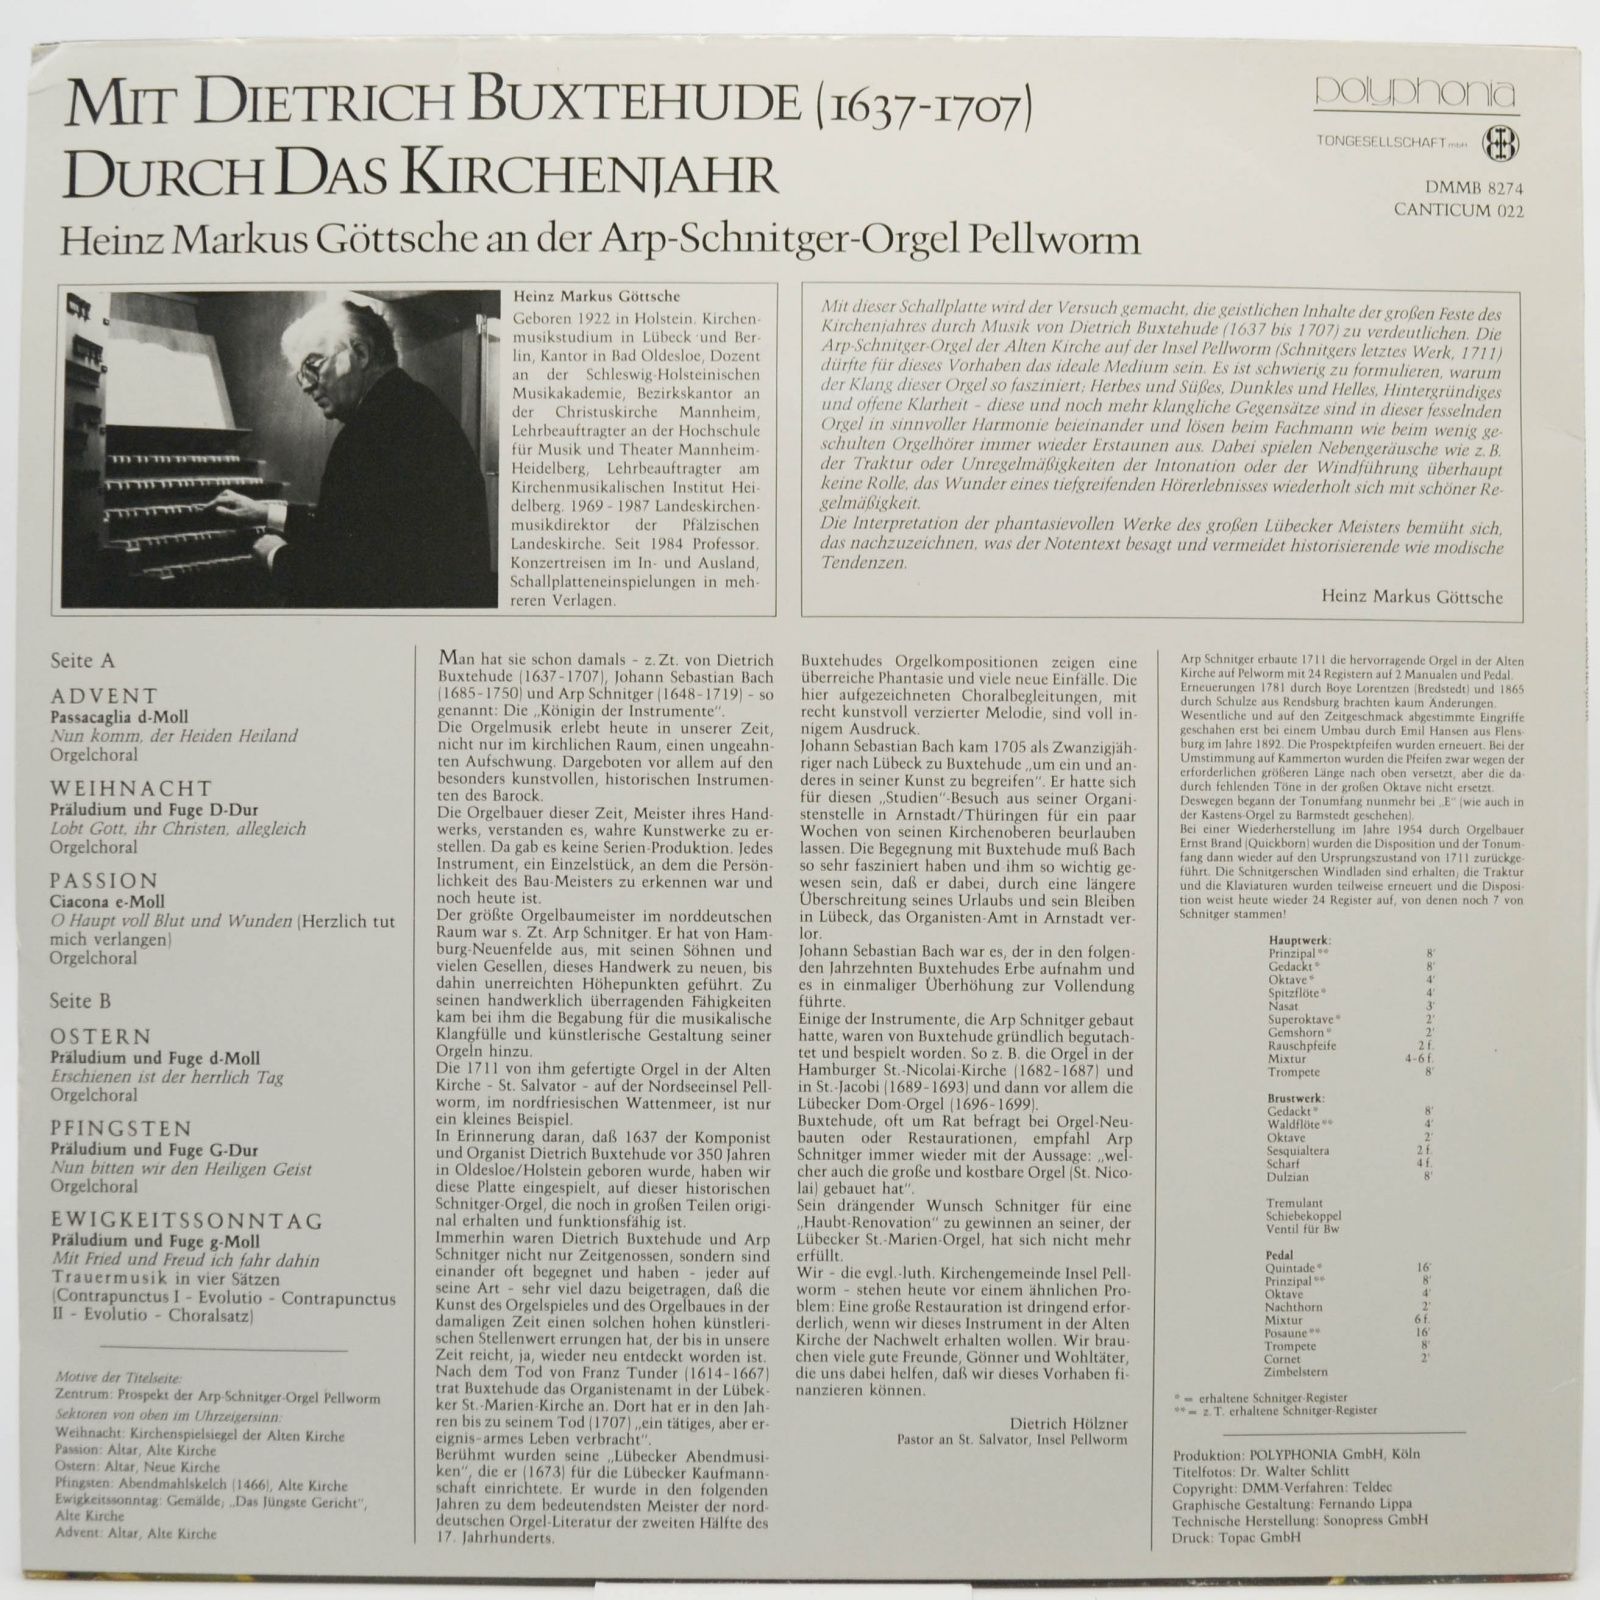 Mit Dietrich Buxtehude — Durch Das Kirchenjahr, 1973